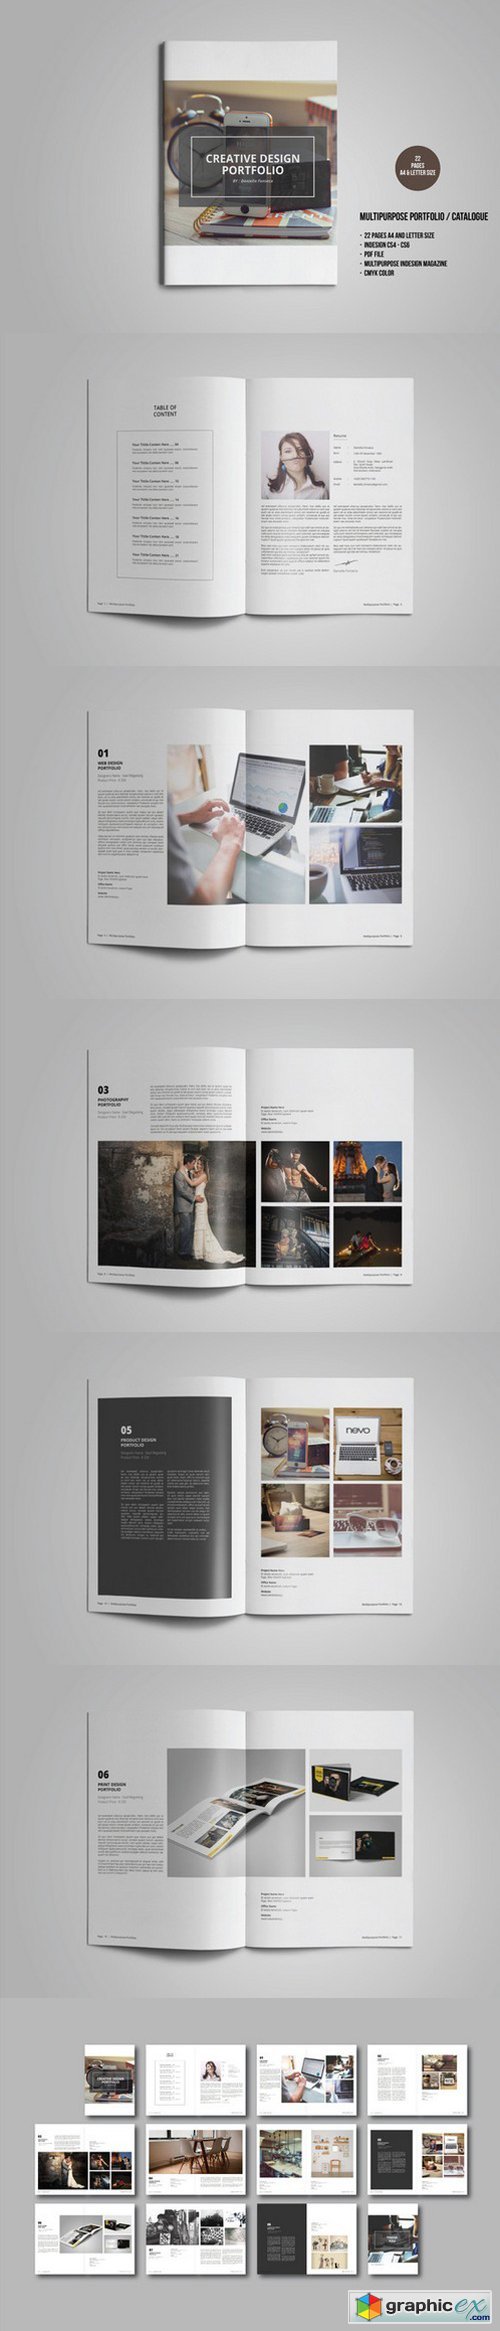 Multipurpose Portfolio / Catalogue